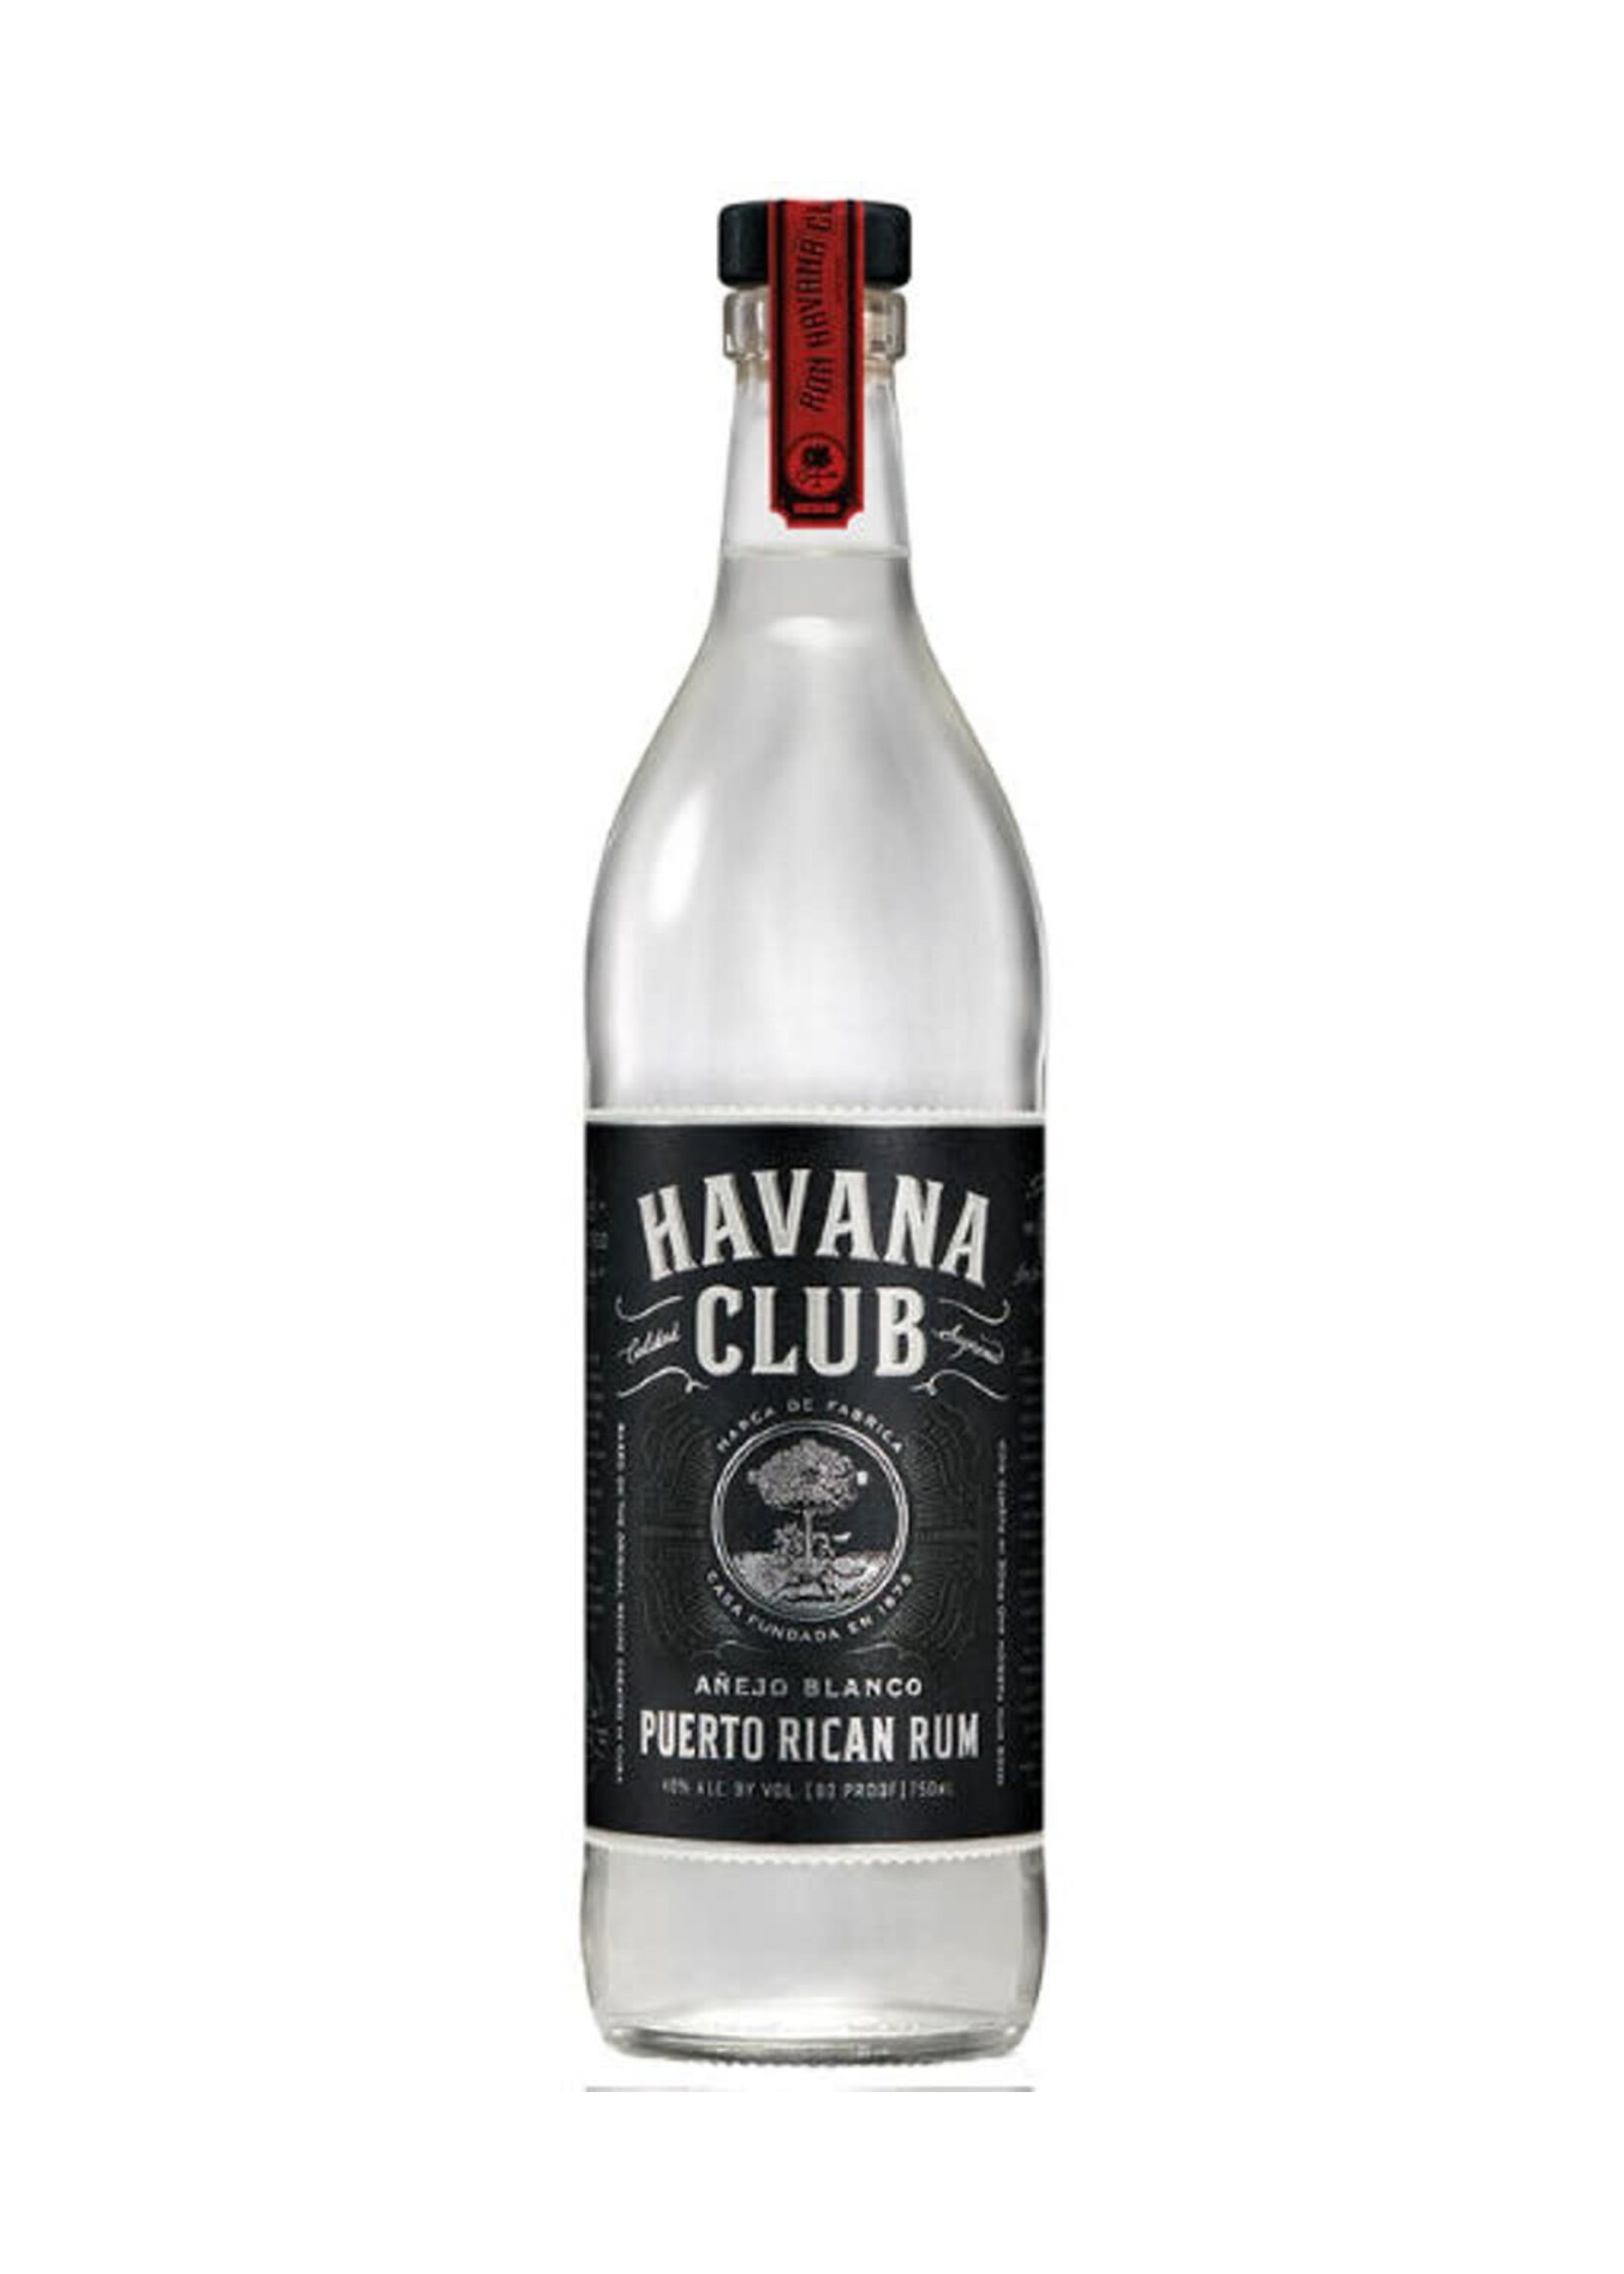 Havana Club Light Rum Anejo Blanco 80Proof 750ml